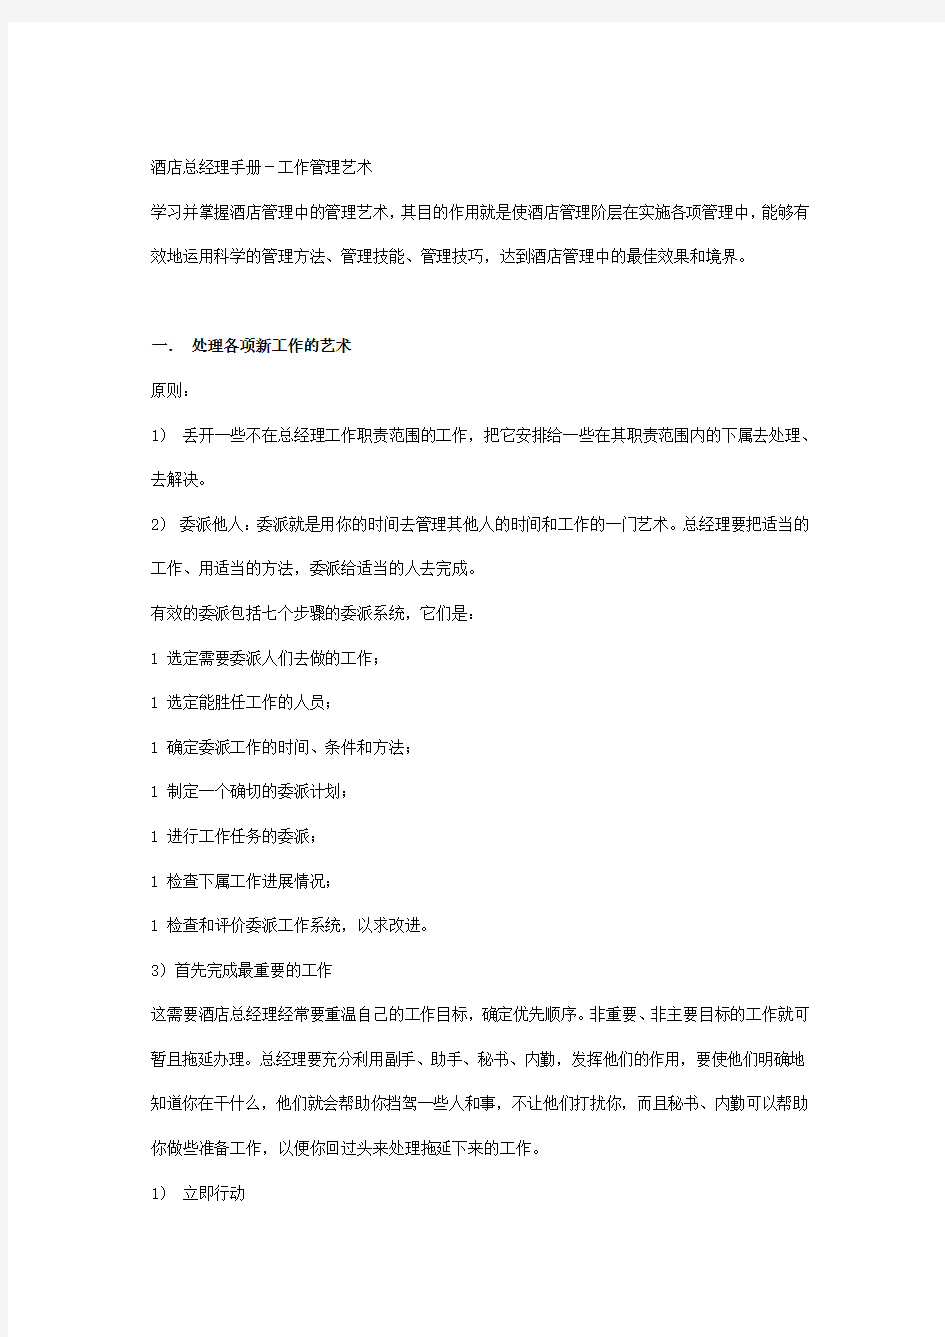 鑫进蛟龙大酒店上半年工作总结和下半年计划文档 (2)